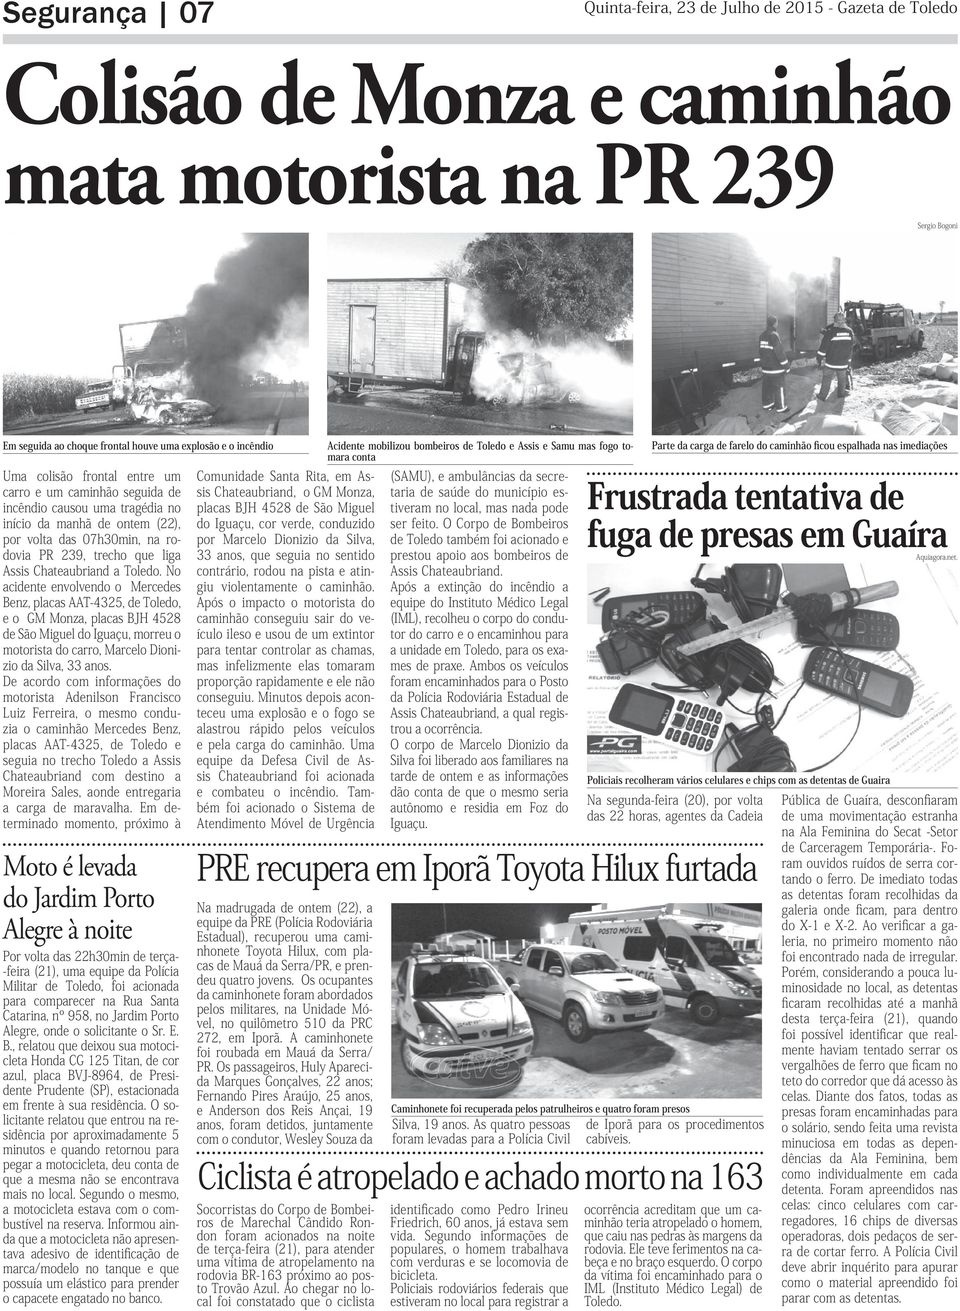 Toledo. No acidente envolvendo o Mercedes Benz, placas AAT-4325, de Toledo, e o GM Monza, placas BJH 4528 de São Miguel do Iguaçu, morreu o motorista do carro, Marcelo Dionizio da Silva, 33 anos.